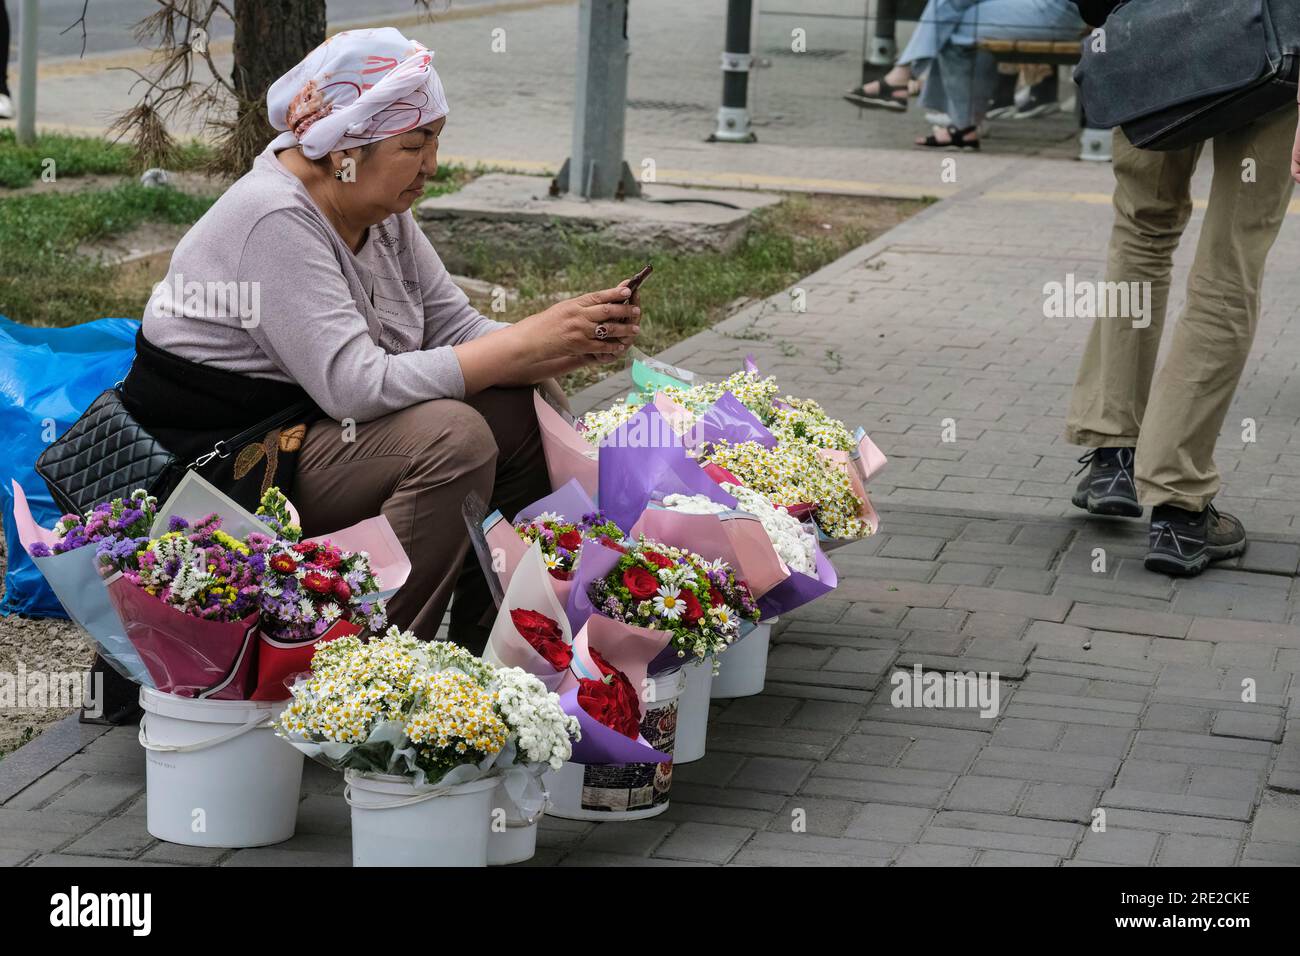 Kazakhstan, Almaty. Street Scene: Woman Selling Flowers. Stock Photo